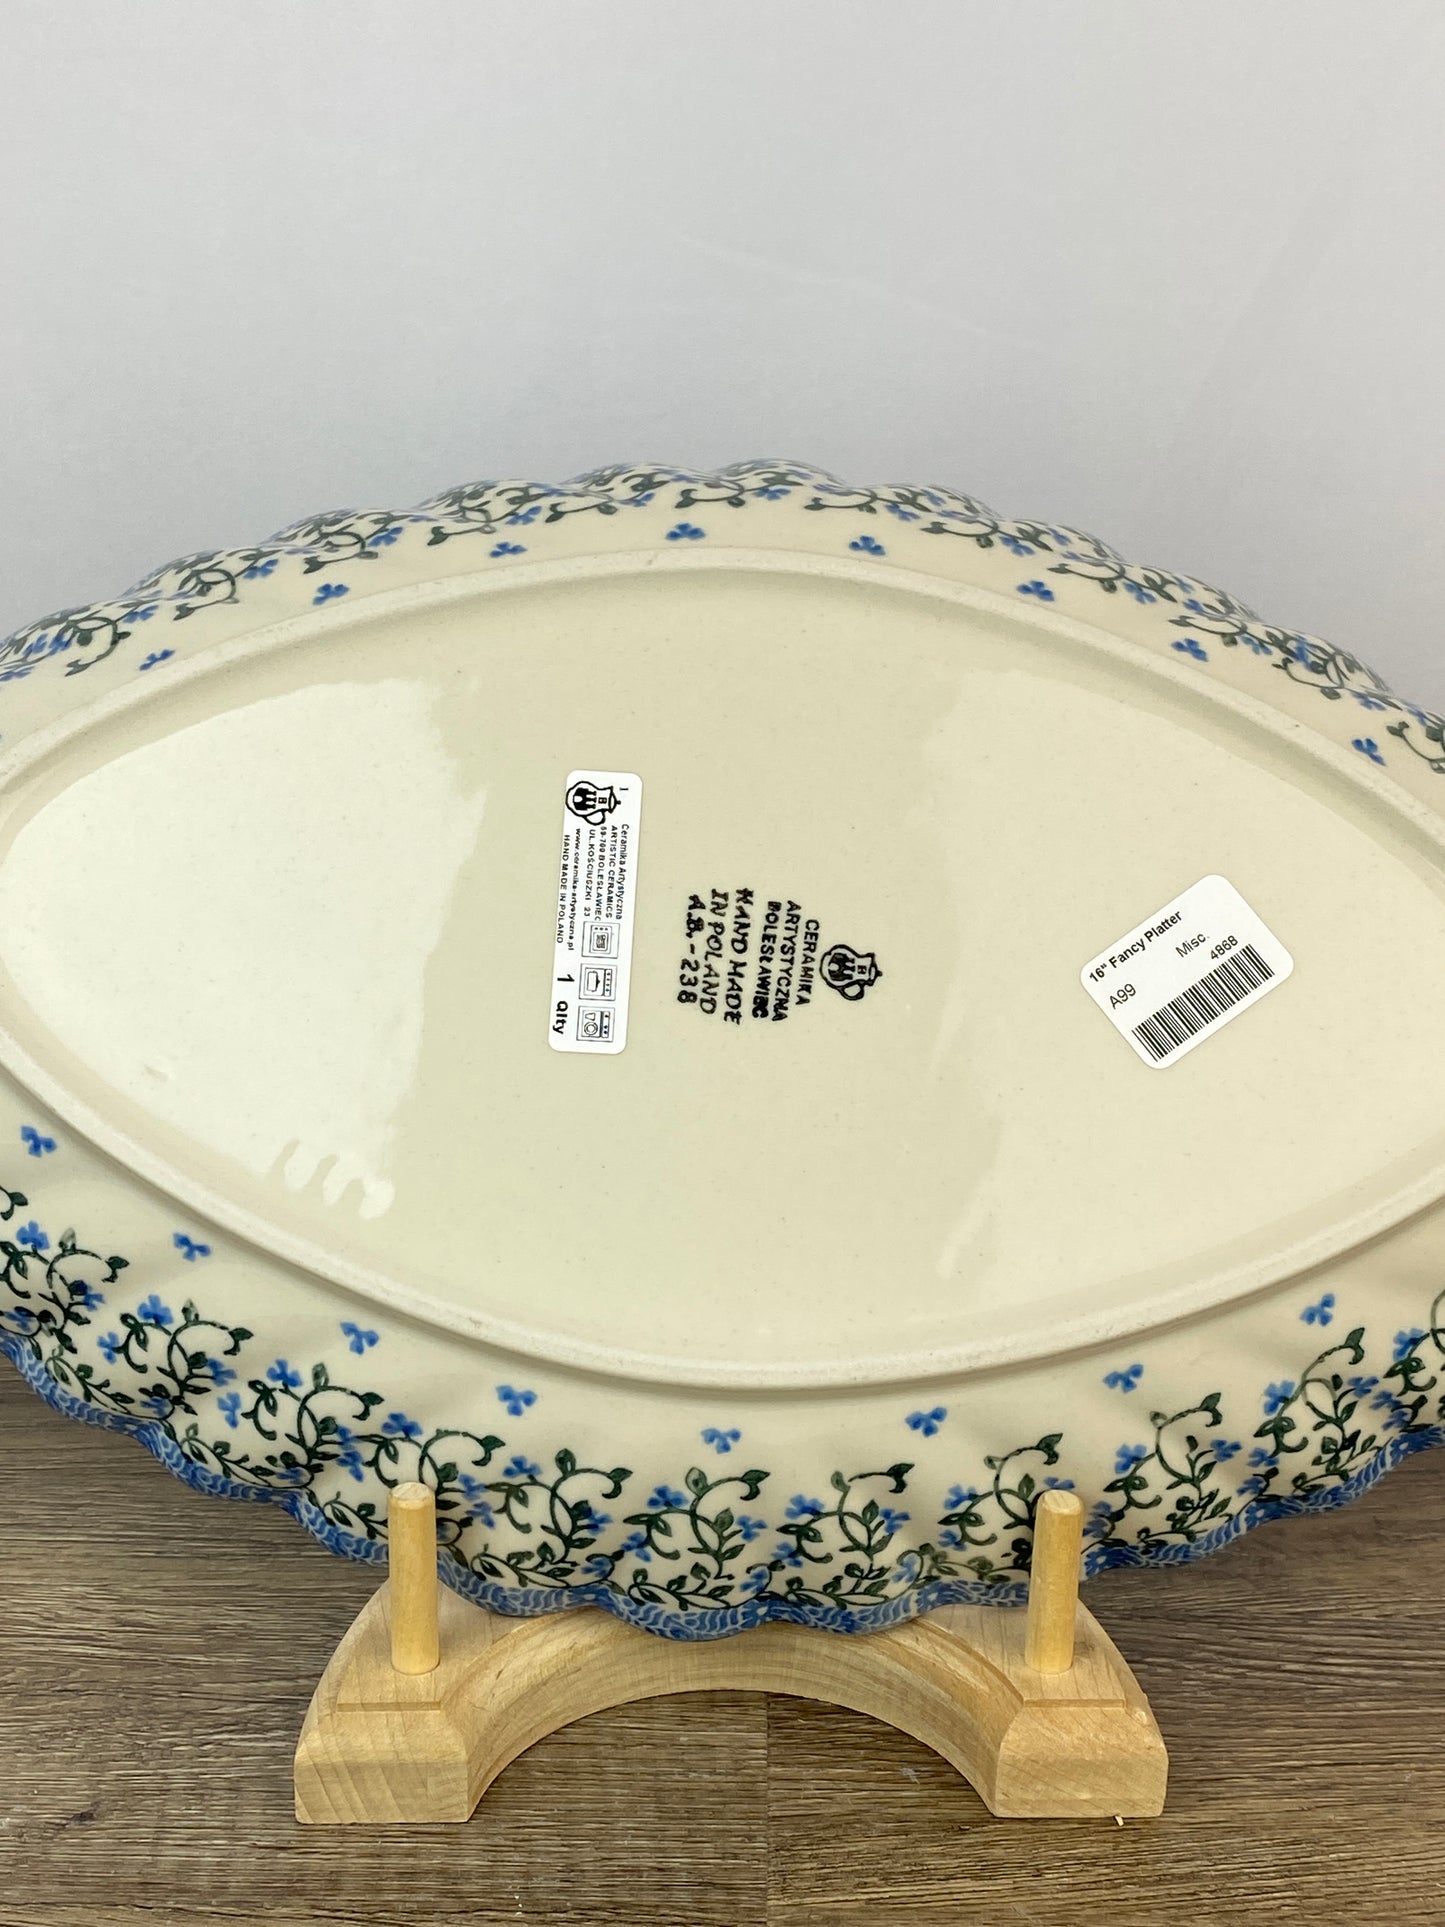 SALE Fancy Platter - Shape A99 - Pattern 1933